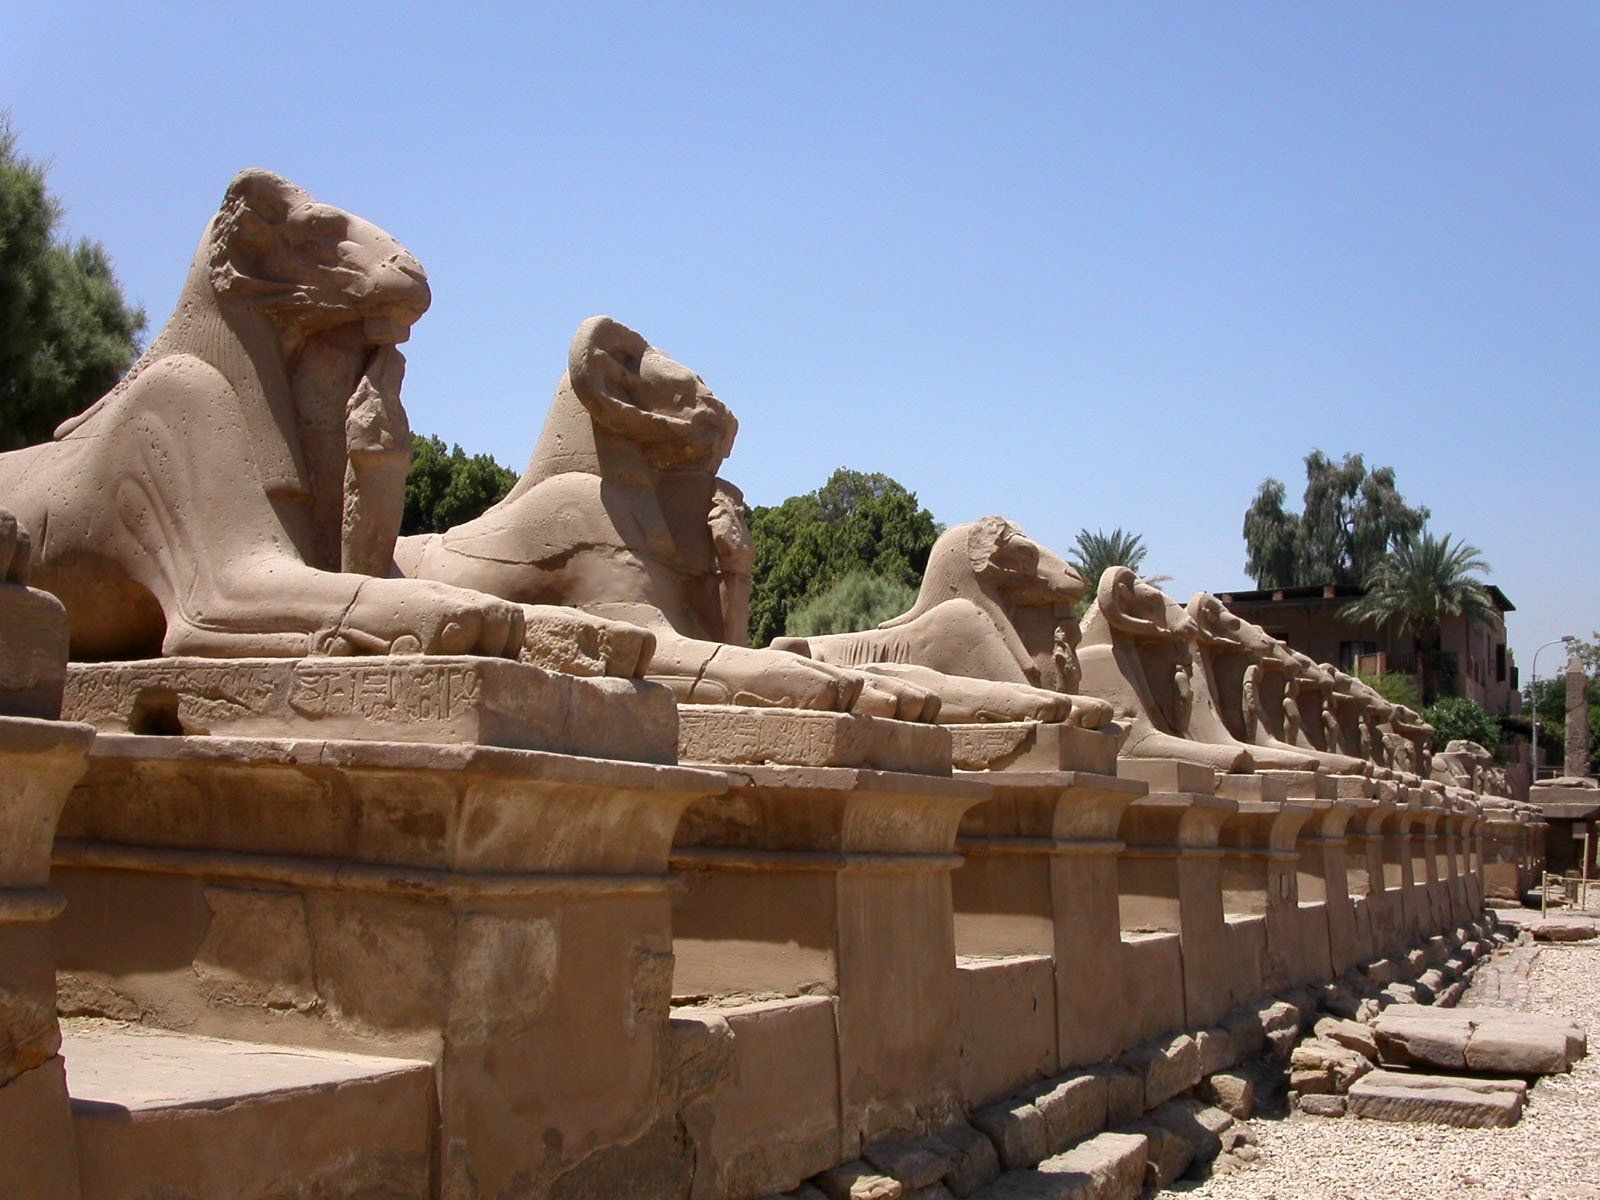 temple de Louxor, croisière sur le Nil, Voyage Egypte pas cher, croisière Deluxe Louxor, Assouan Egypte, ,Louxor egypte, felouque sur le Nil,